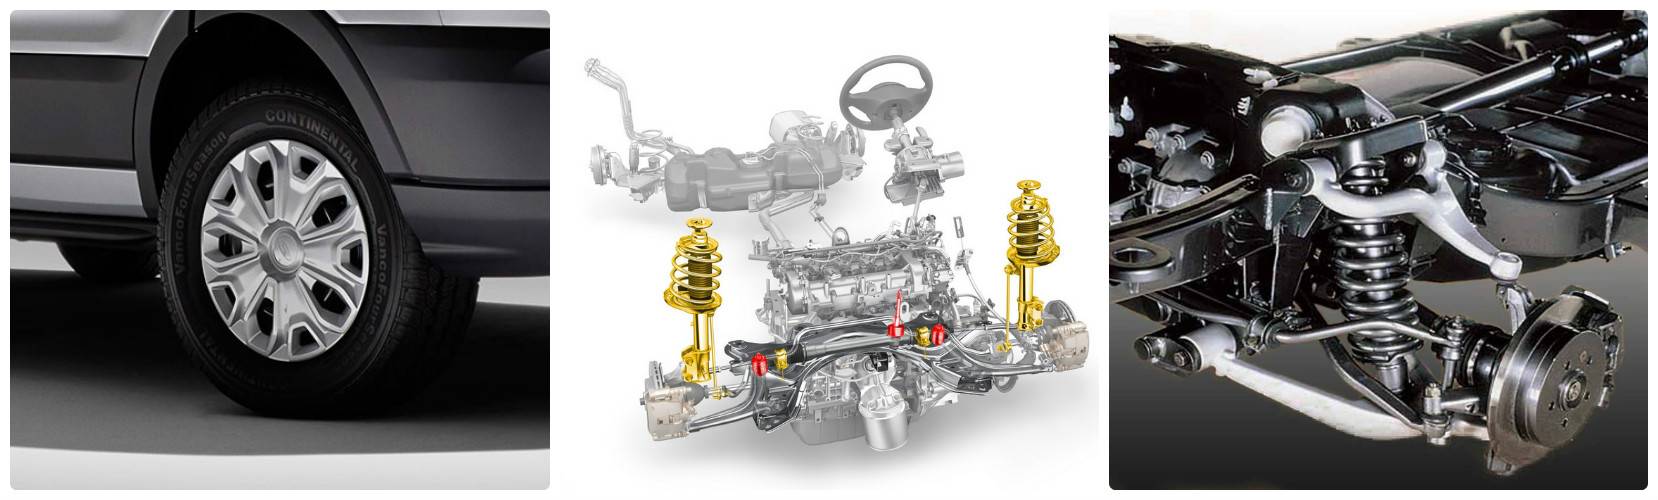 Ford focus 1 – особенности обслуживания и ремонта двигателя, коробки передач, ходовой, кузова